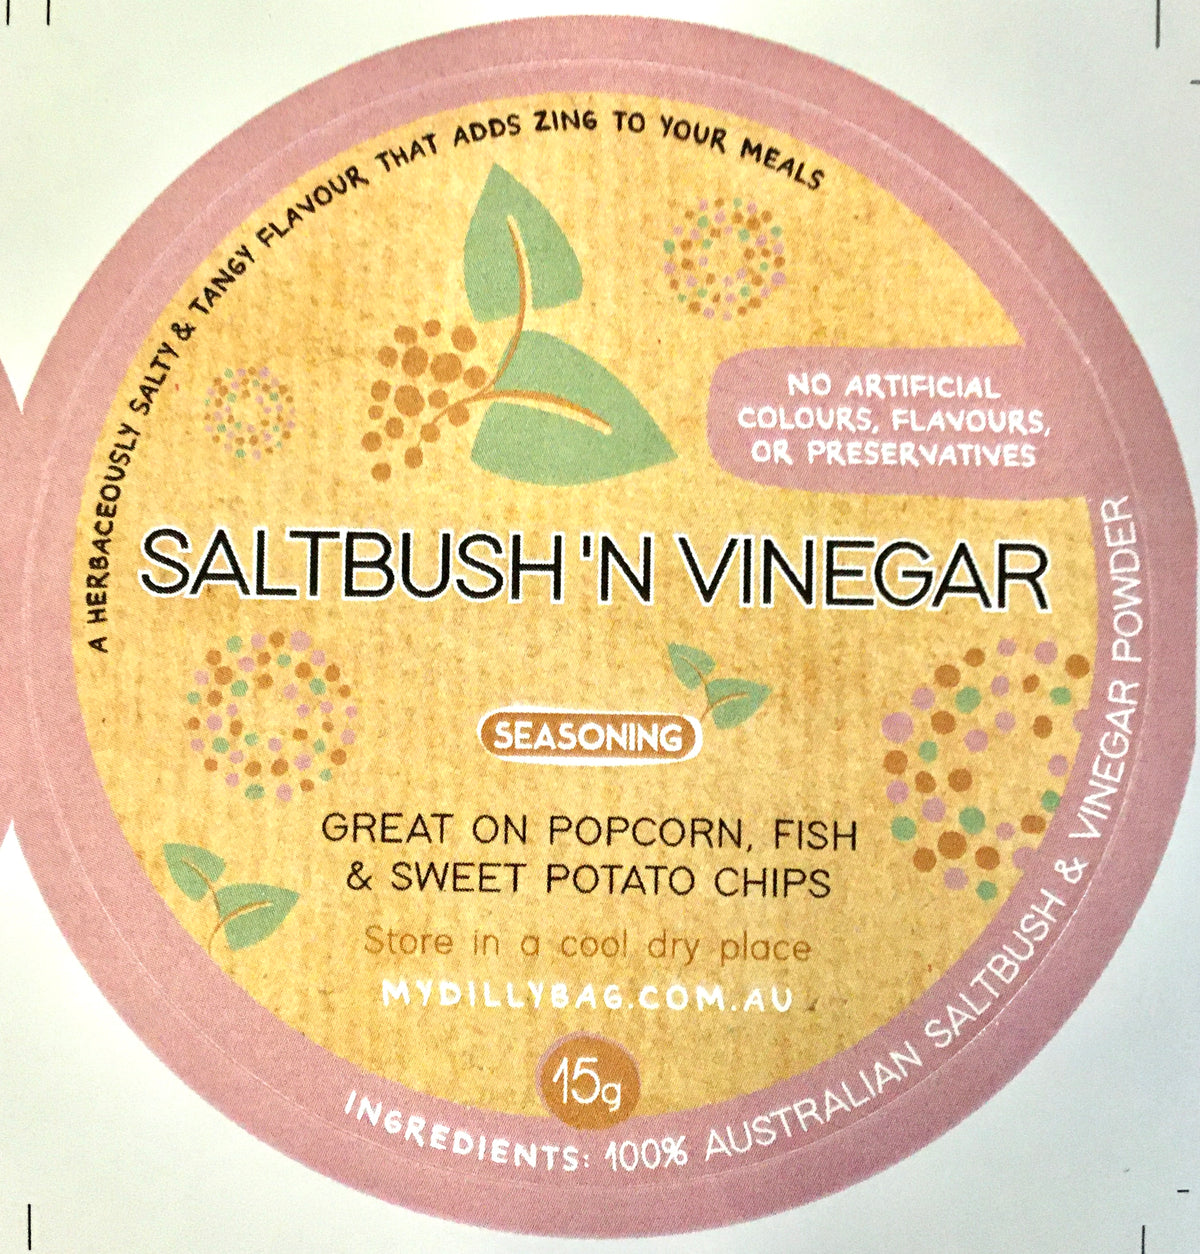 Saltbush ‘N Vinegar